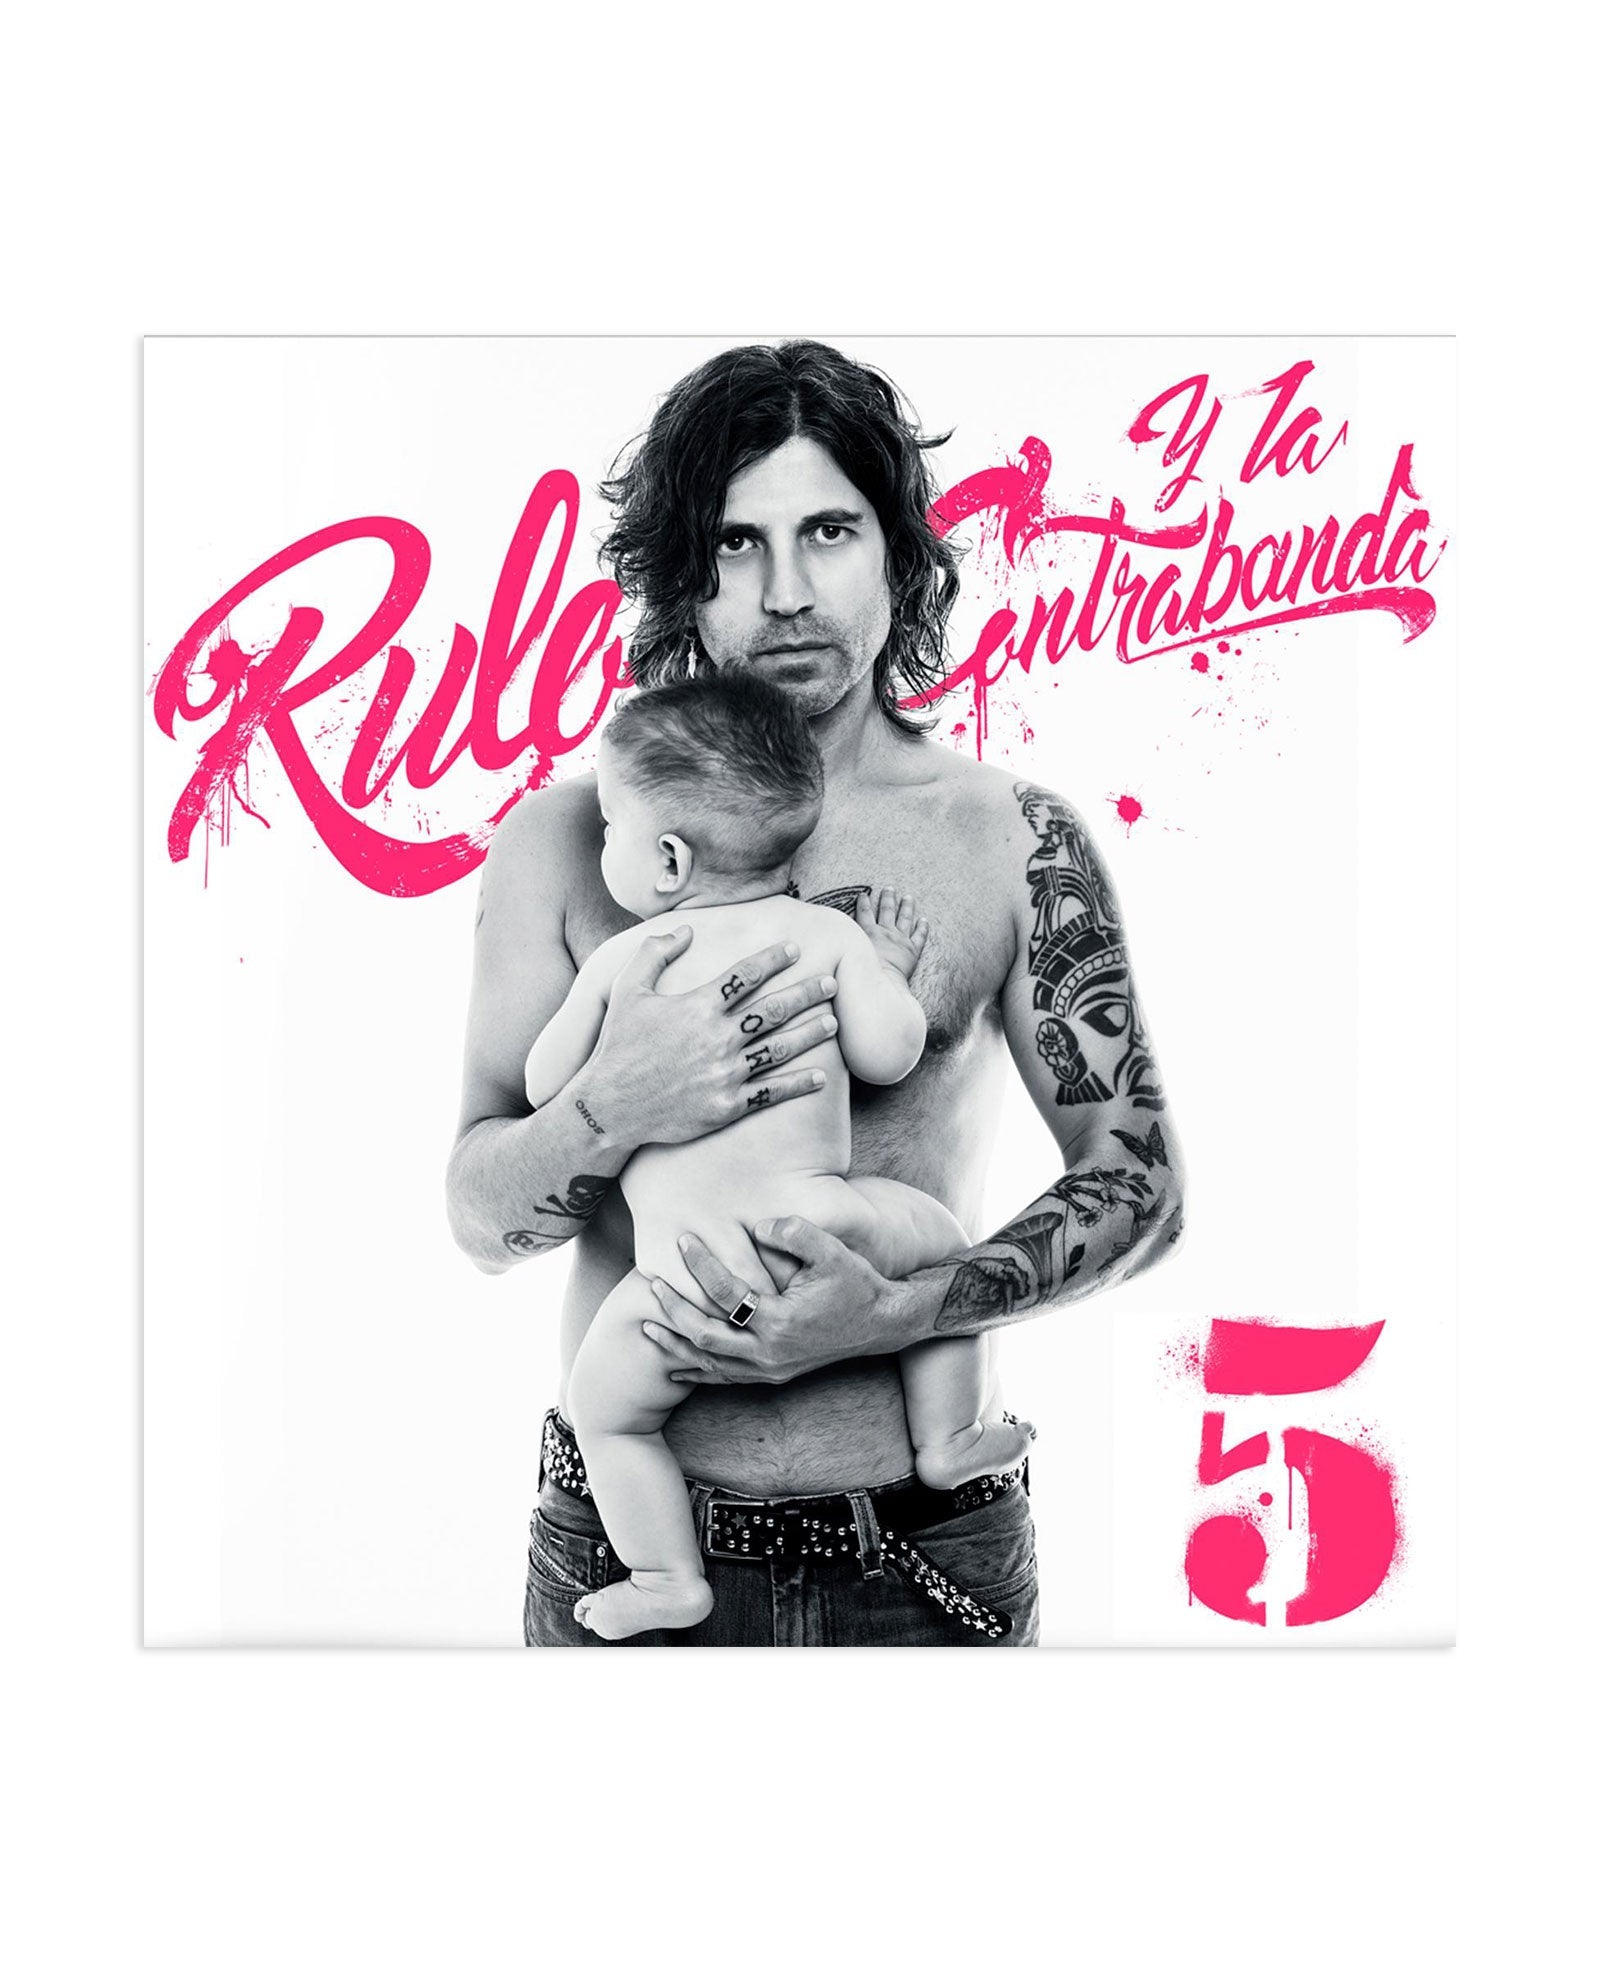 Rulo y la Contrabanda - CD Digipack "5" + Púa + Pegatinas + Single Vinilo 7" con Cara B Inédita - D2fy · Rocktud - Rocktud